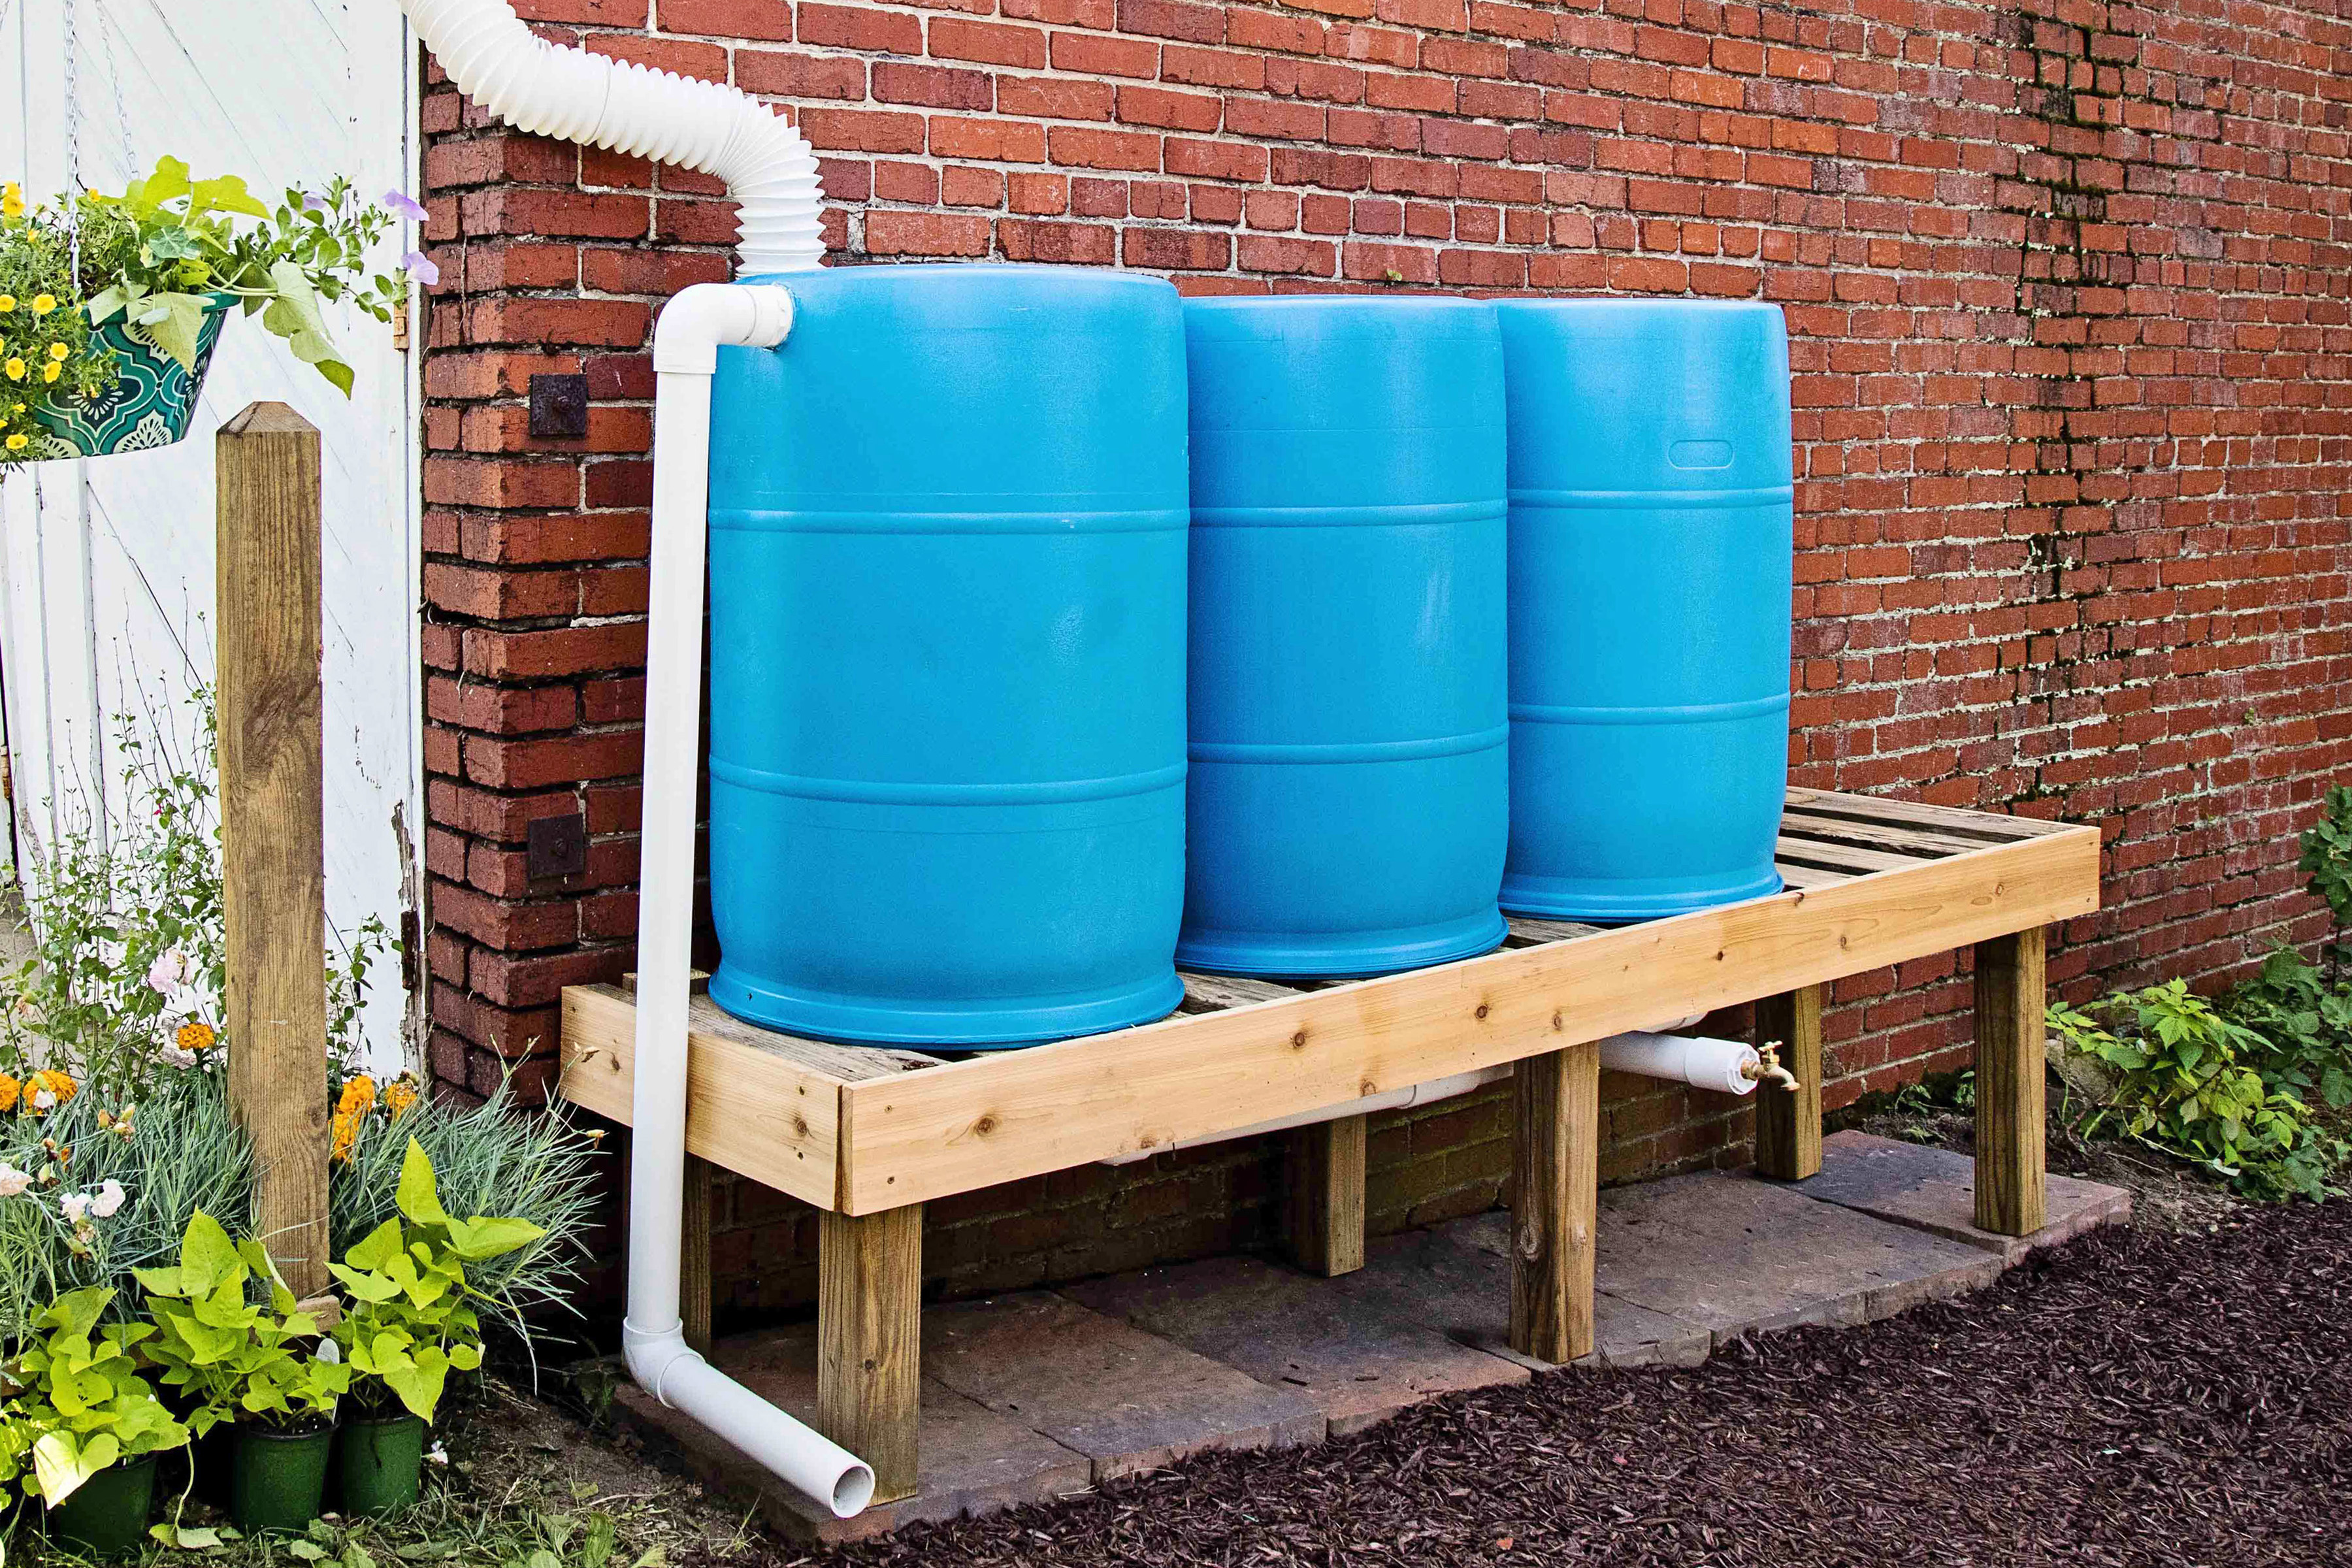 Details about   65 Gallon Rain Barrel Storage Planter Outdoor Garage Garden Water Collector Yard 